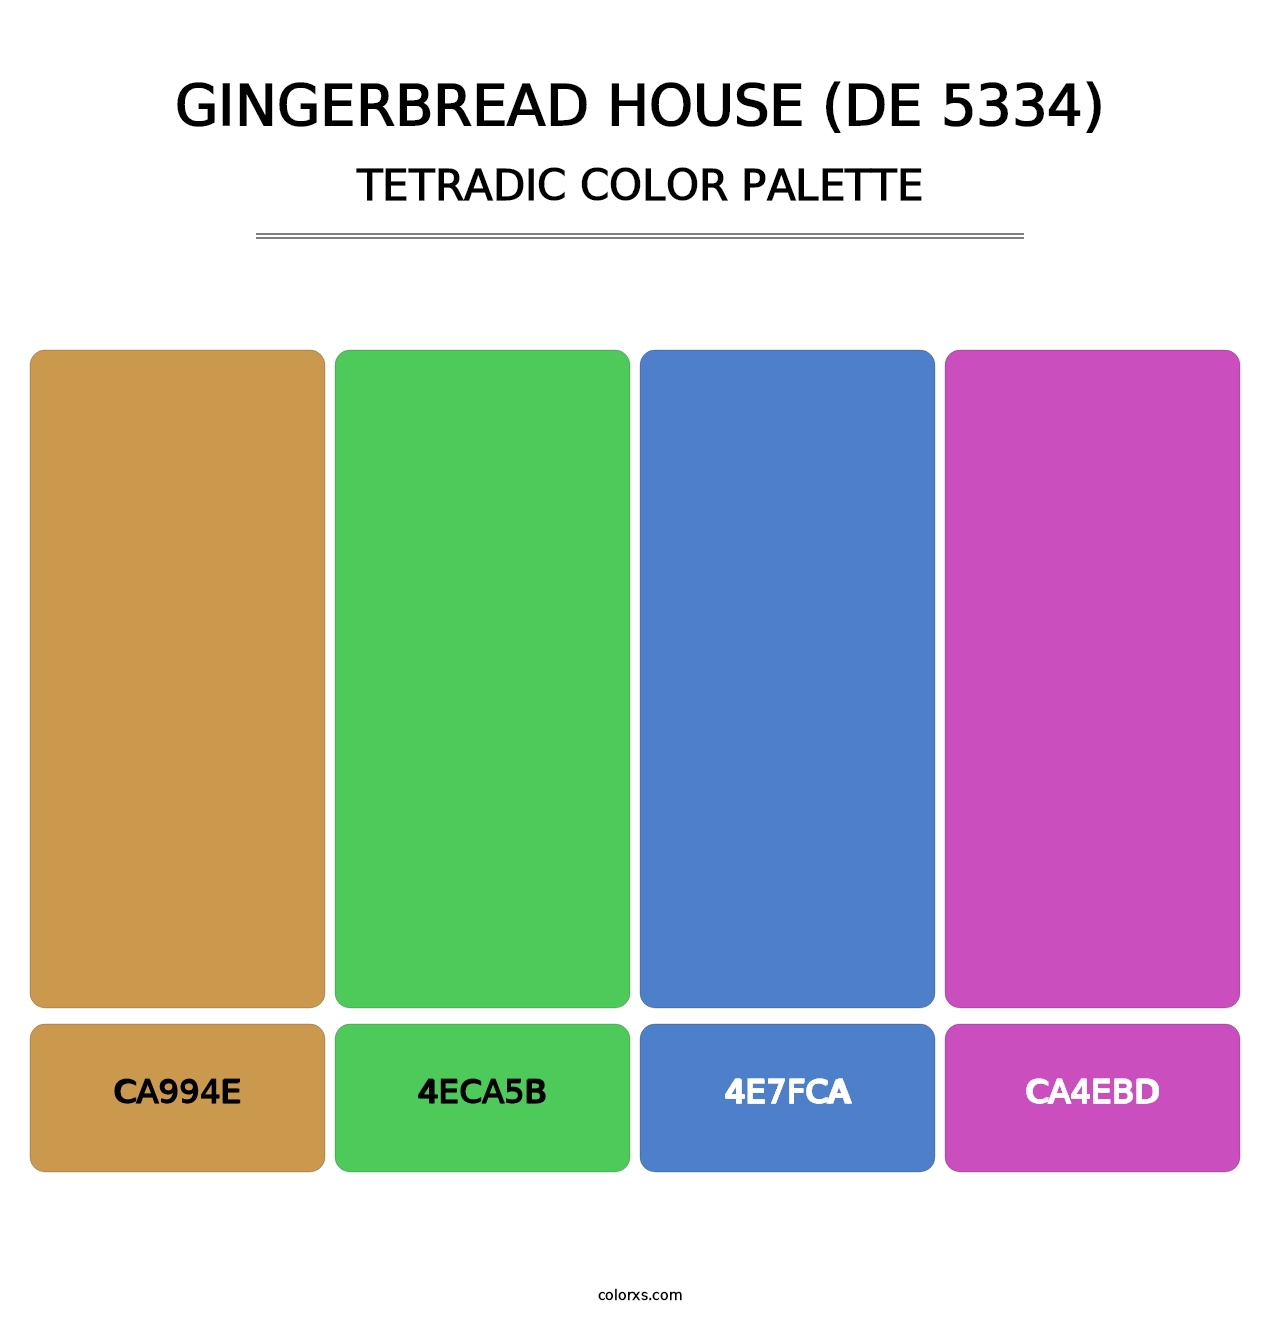 Gingerbread House (DE 5334) - Tetradic Color Palette